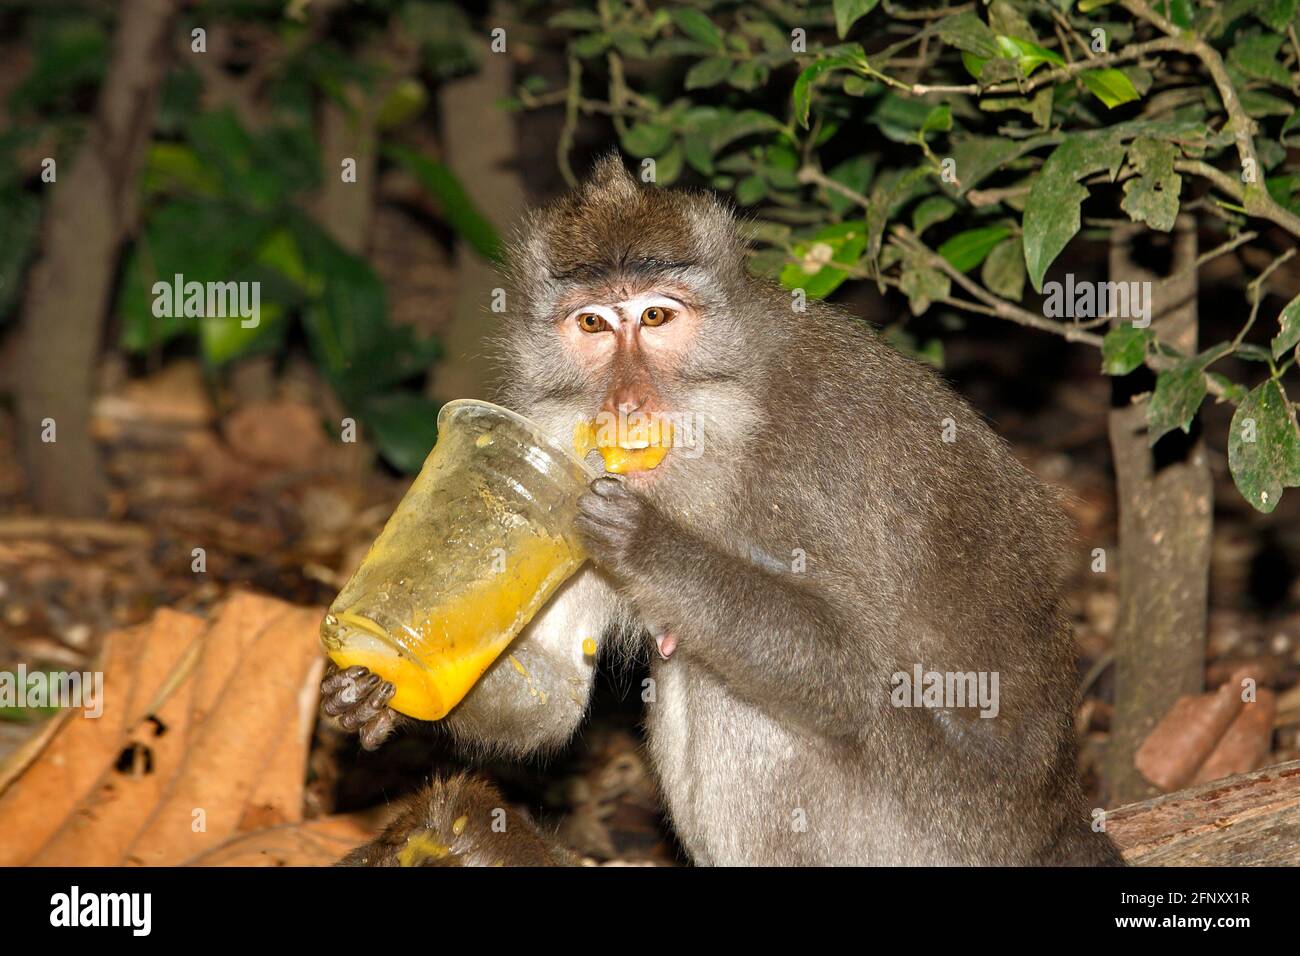 Macaco de cola larga, Macaca fascicularis. El mono está bebiendo jugo de vidrio plástico y lo tiene alrededor de la boca y labios. Foto de animales divertida. Foto de stock